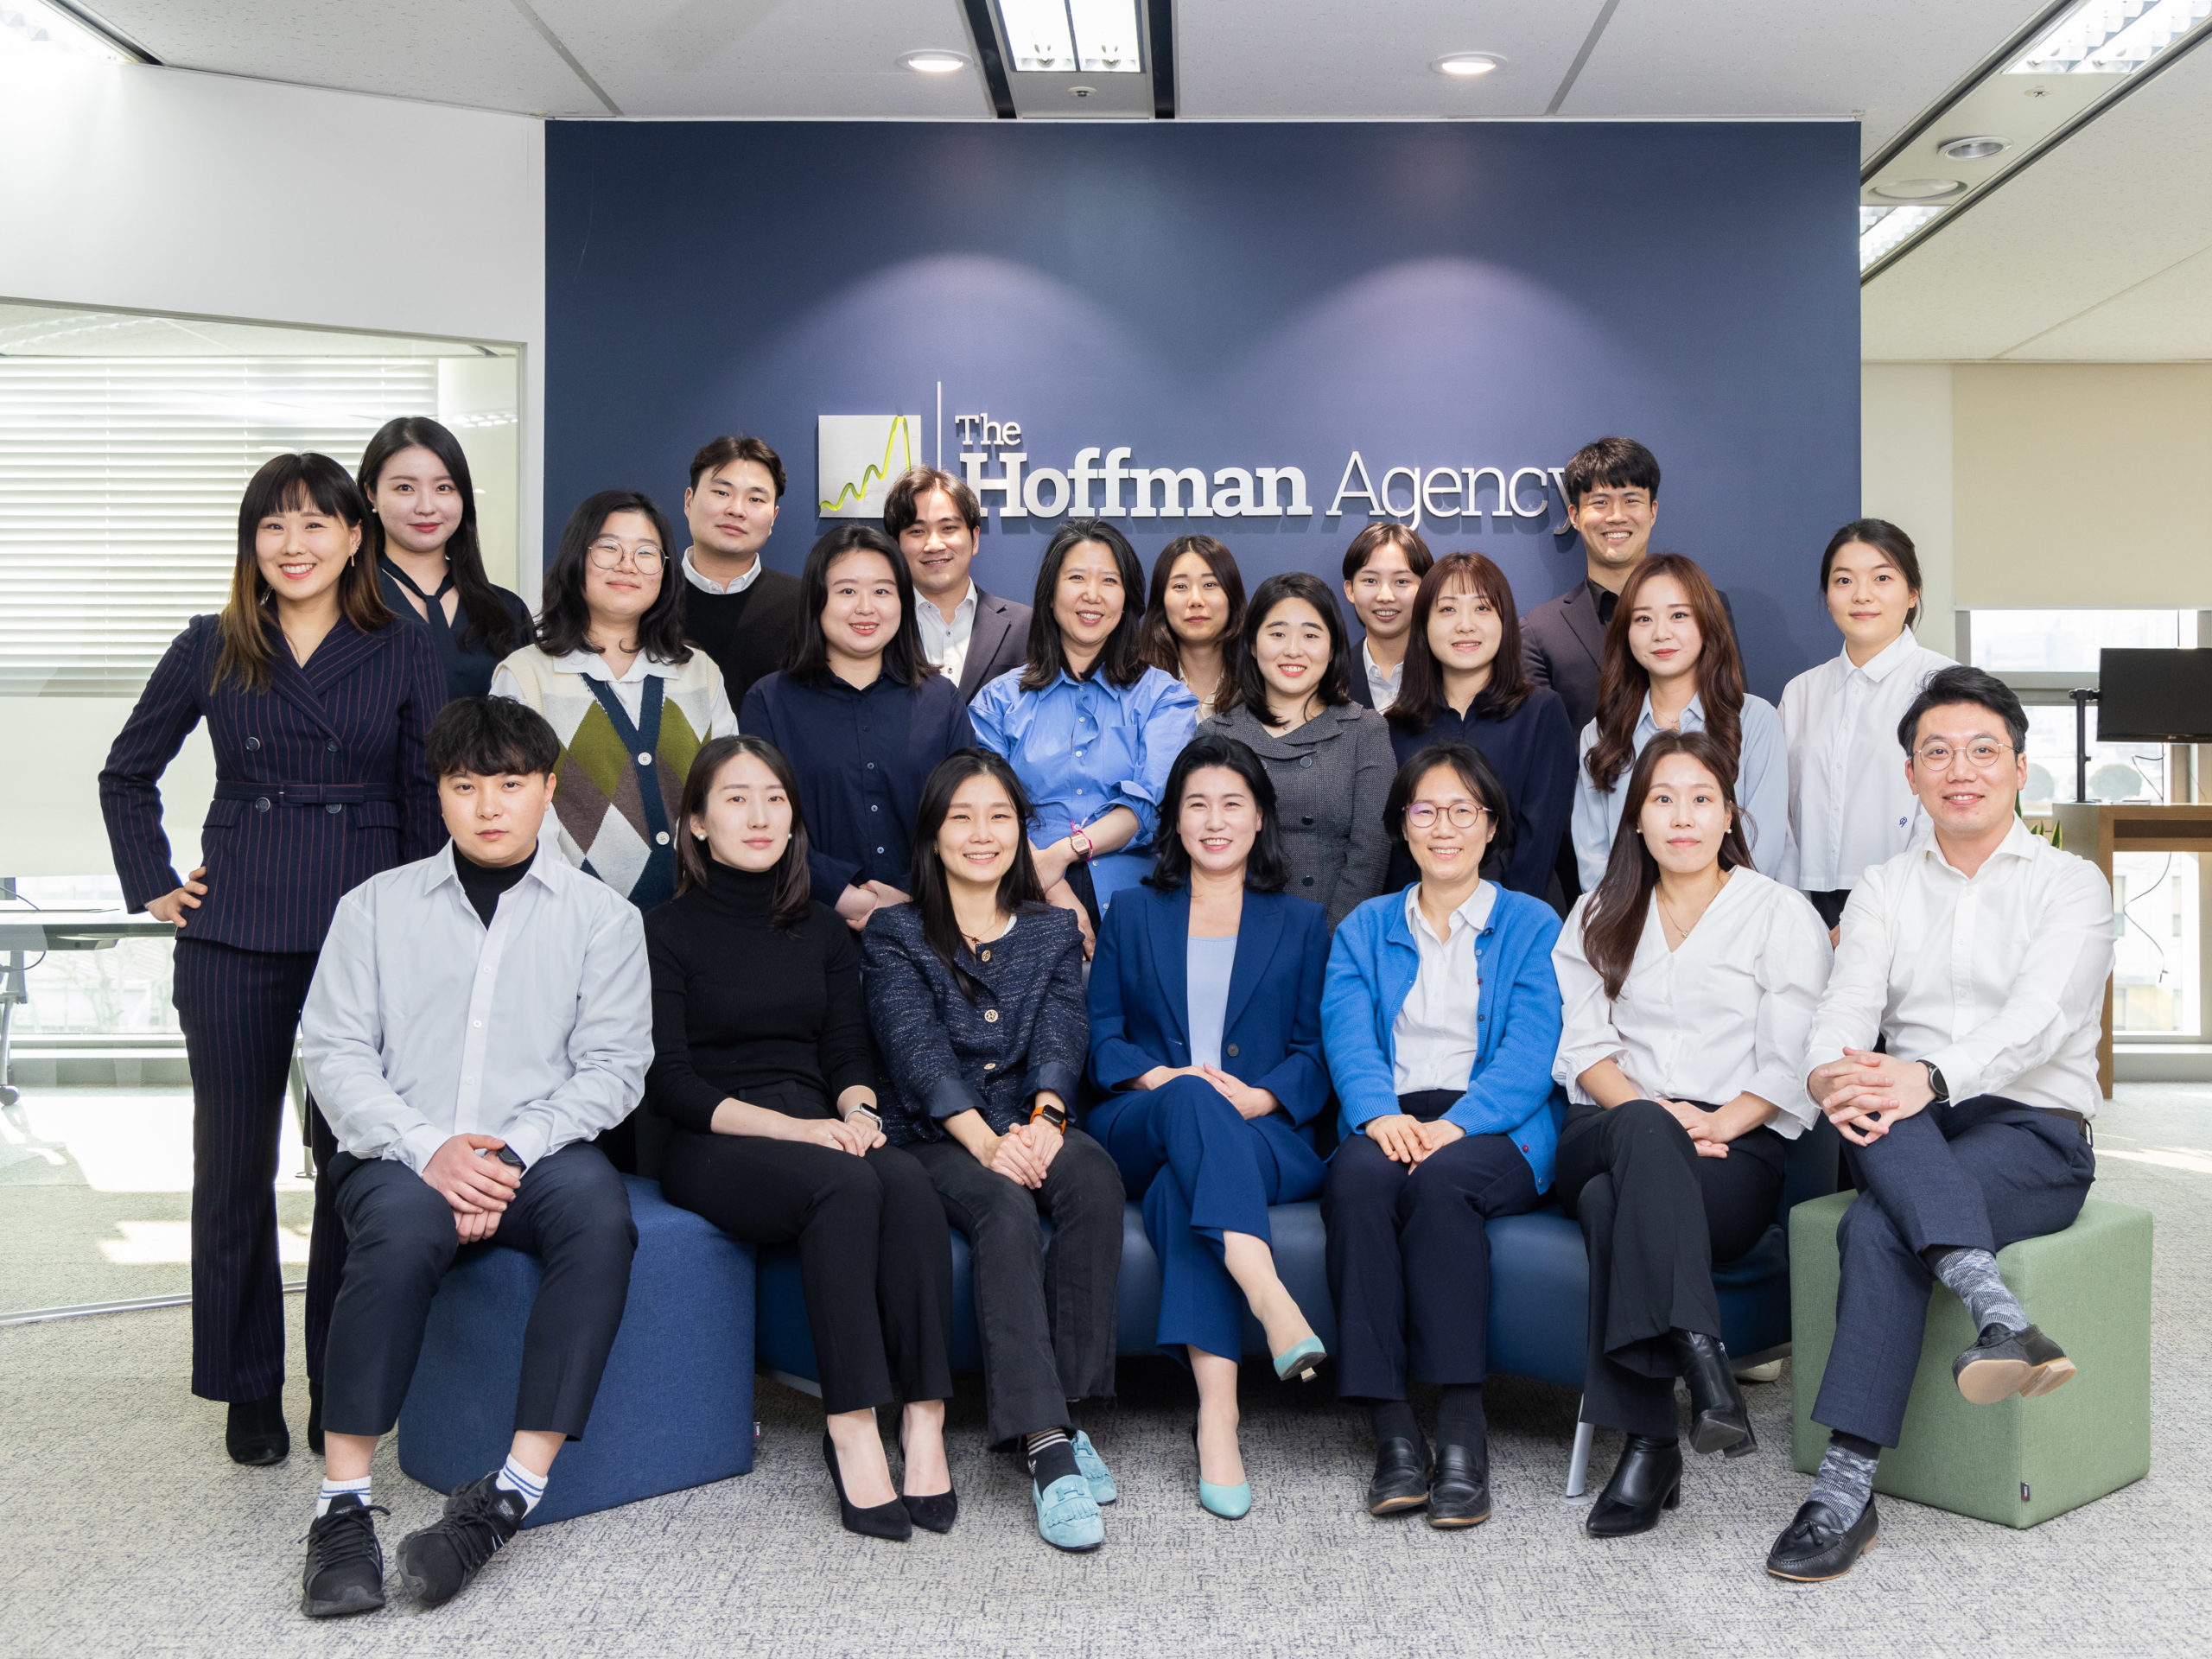 Hoffman_Agency_Korea_Team_Formal